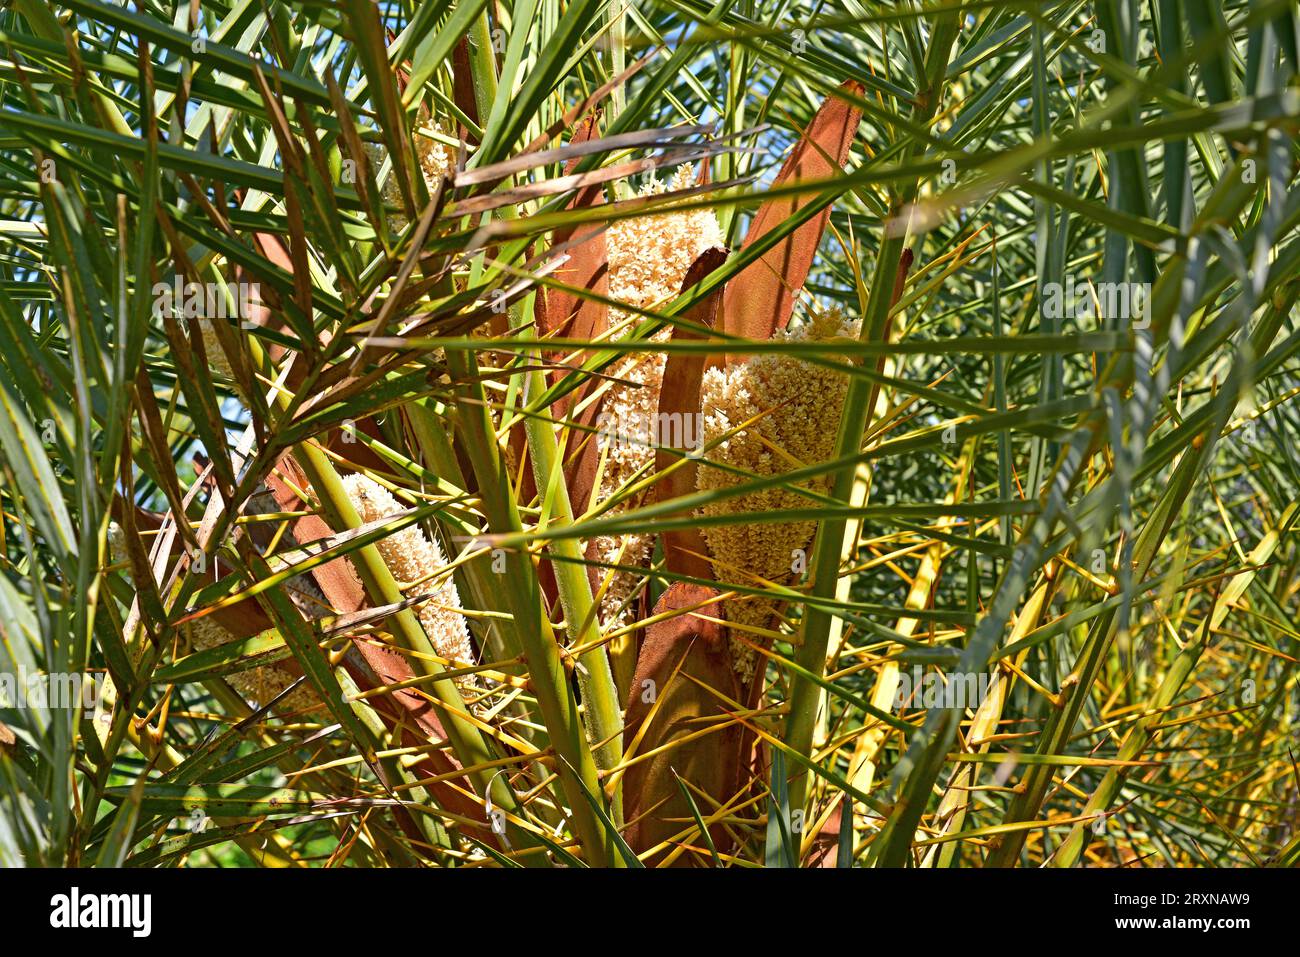 Die kretische Dattelpalme (Phoenix theophrasti) ist eine endemische Palme auf Kreta. Blütenstände. Stockfoto